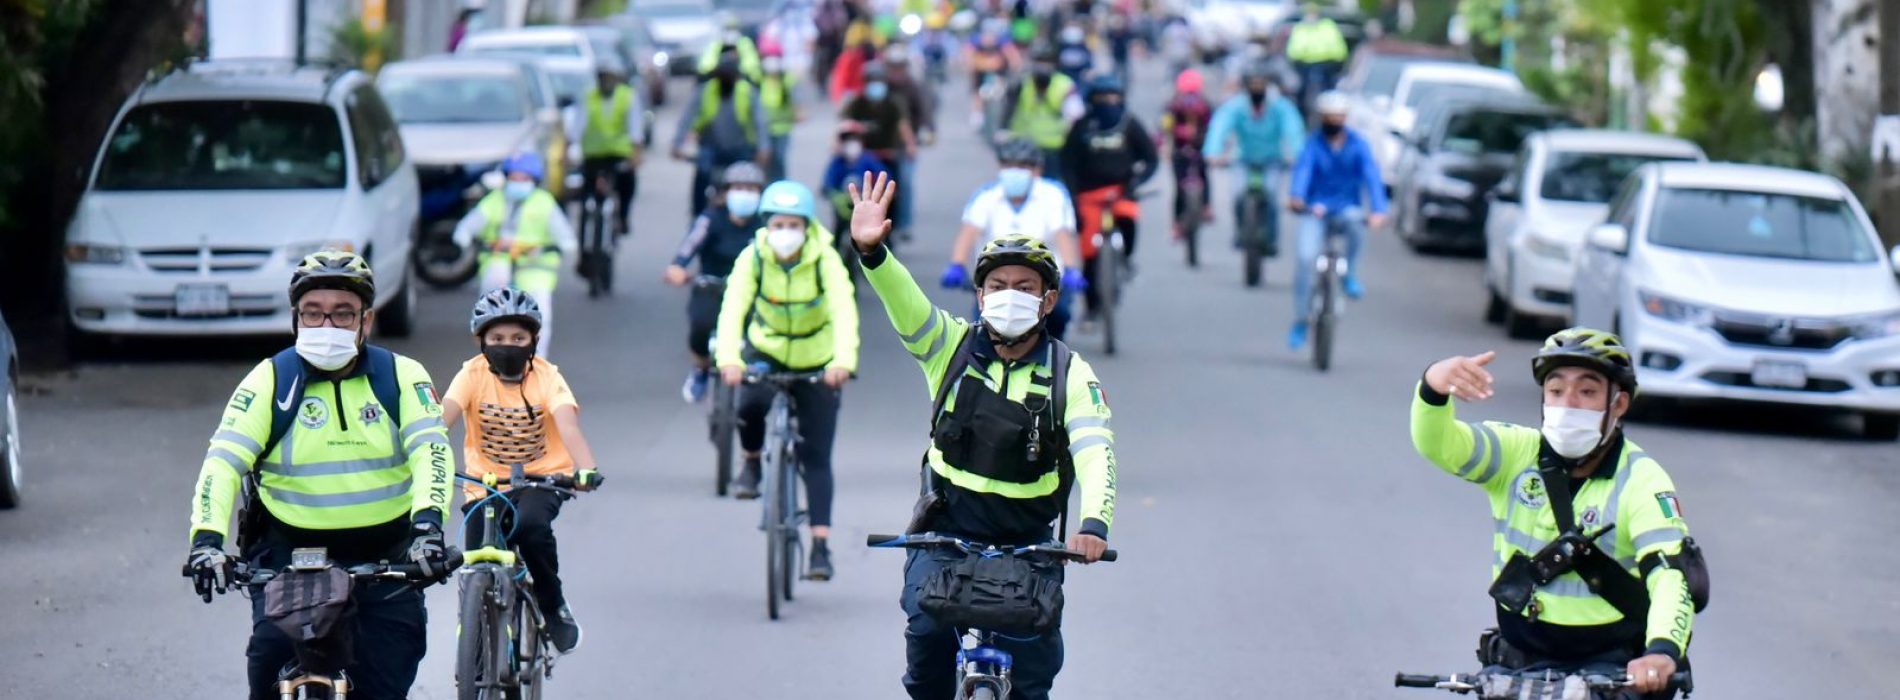 Promueve Semovi el uso de la bicicleta, transporte con múltiples beneficios para la movilidad de la ciudadanía